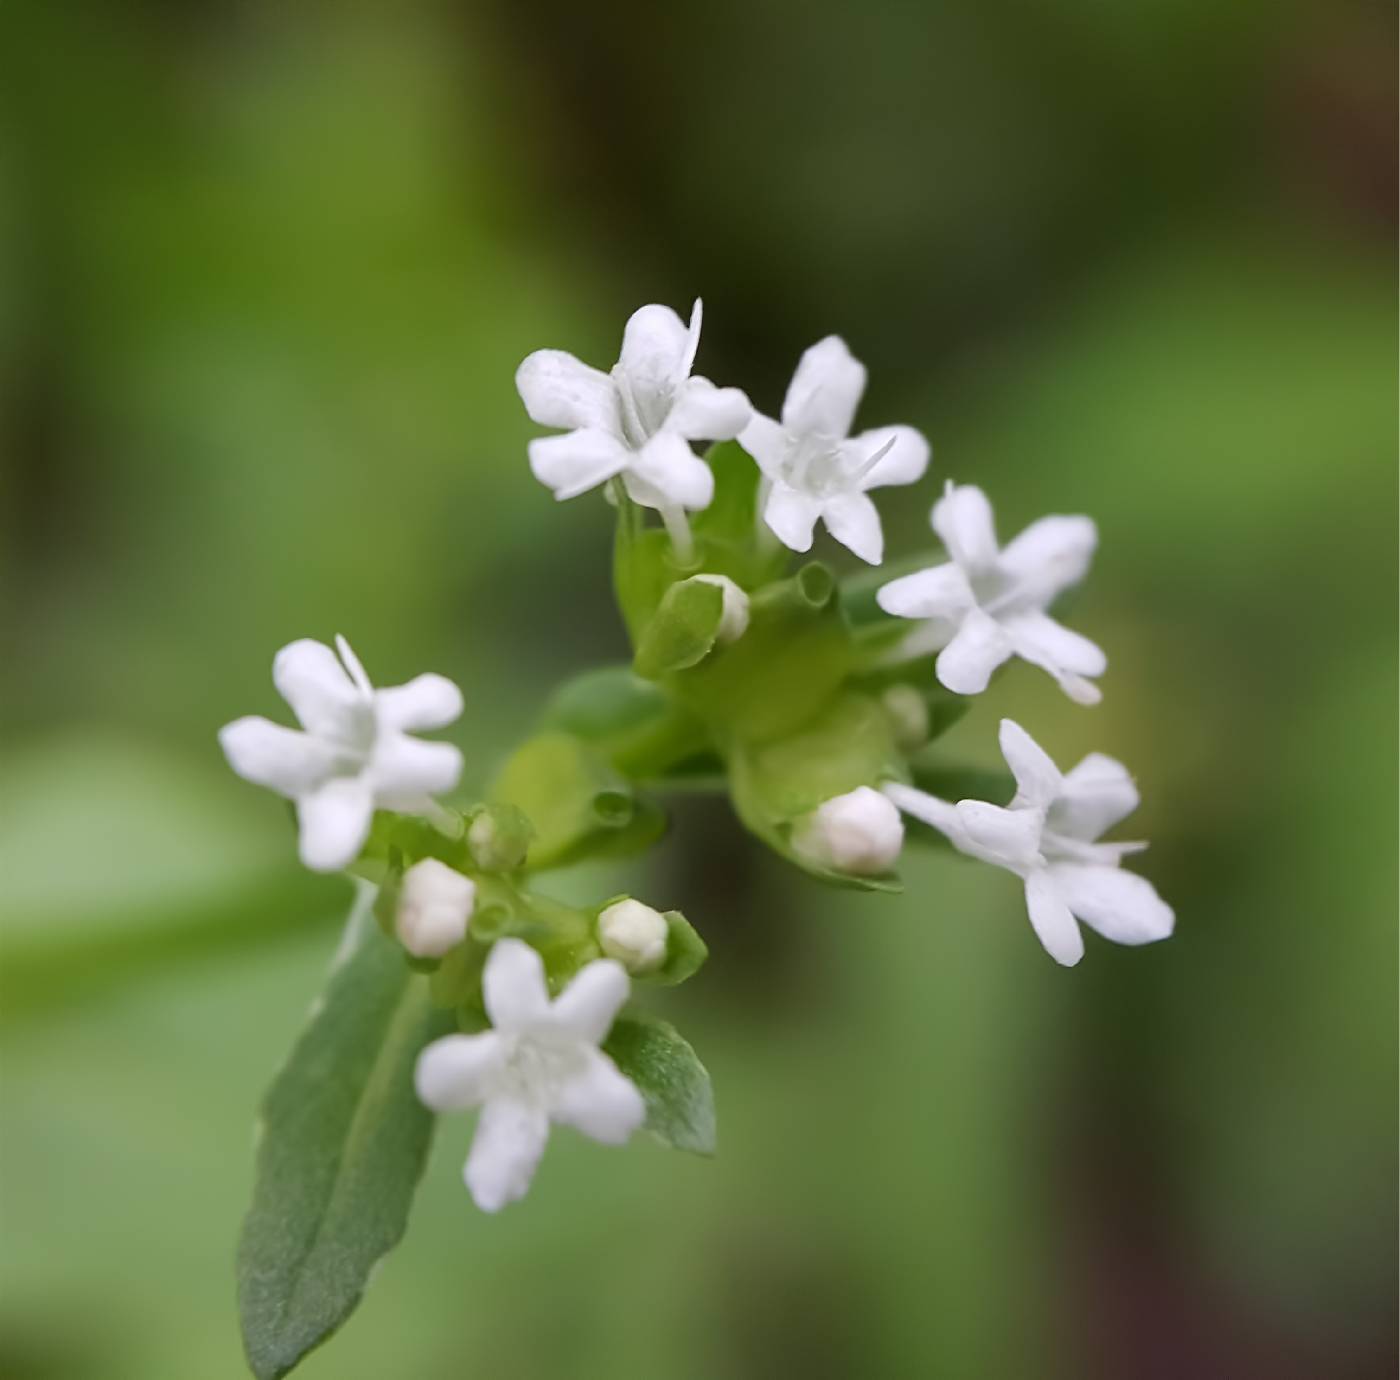 Valerianella chenopodiifolia image